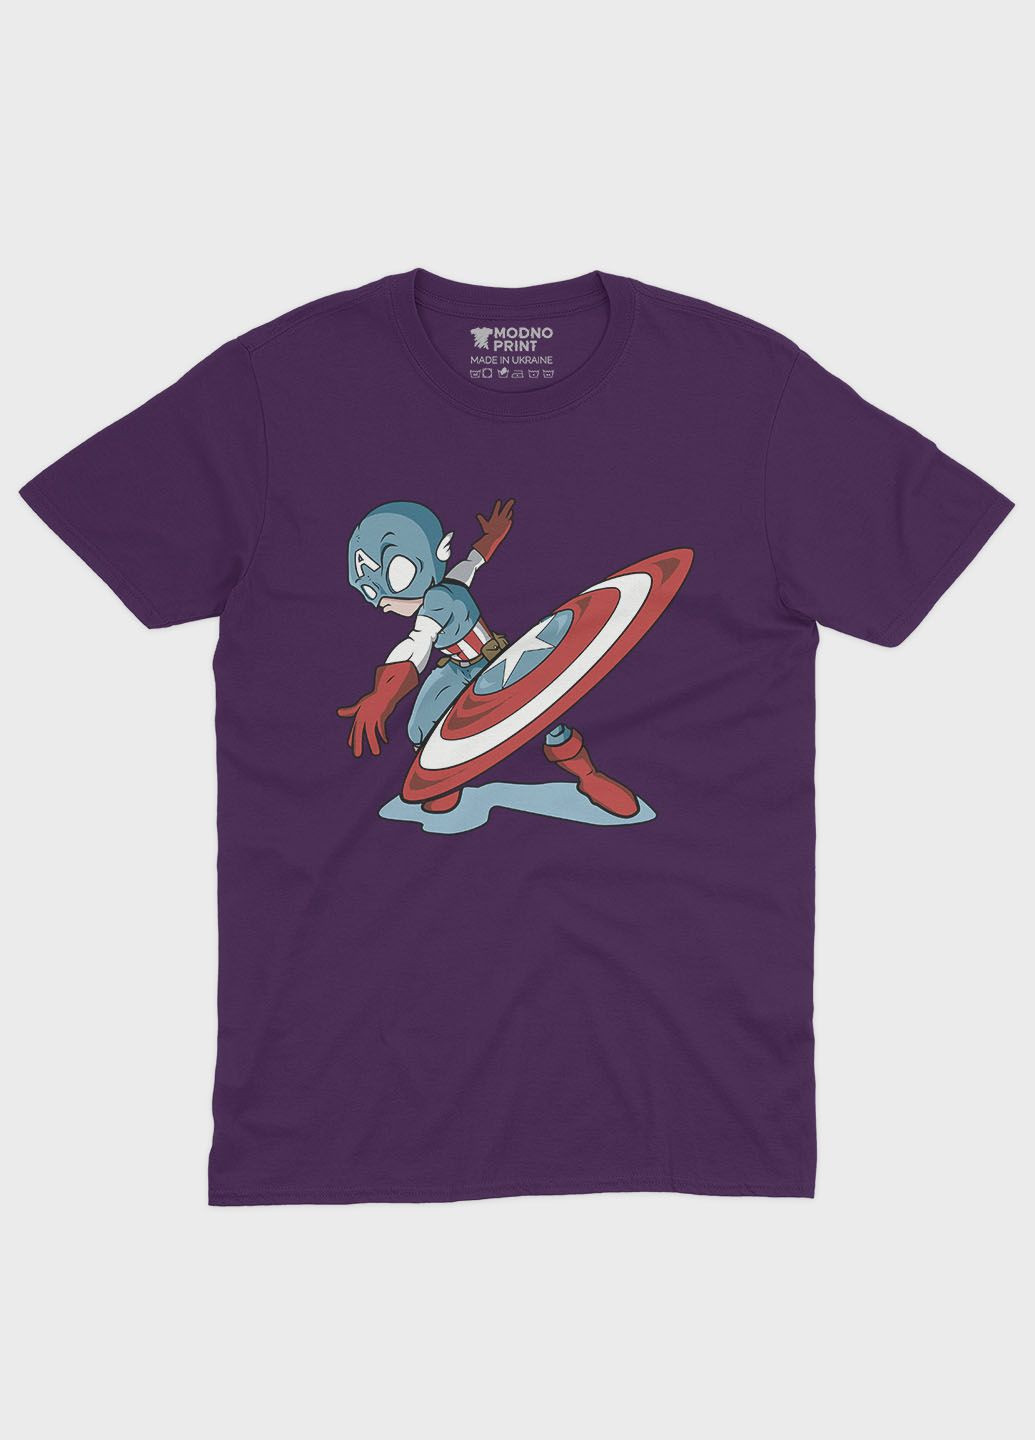 Фіолетова демісезонна футболка для хлопчика з принтом супергероя - капітан америка (ts001-1-dby-006-022-011-b) Modno